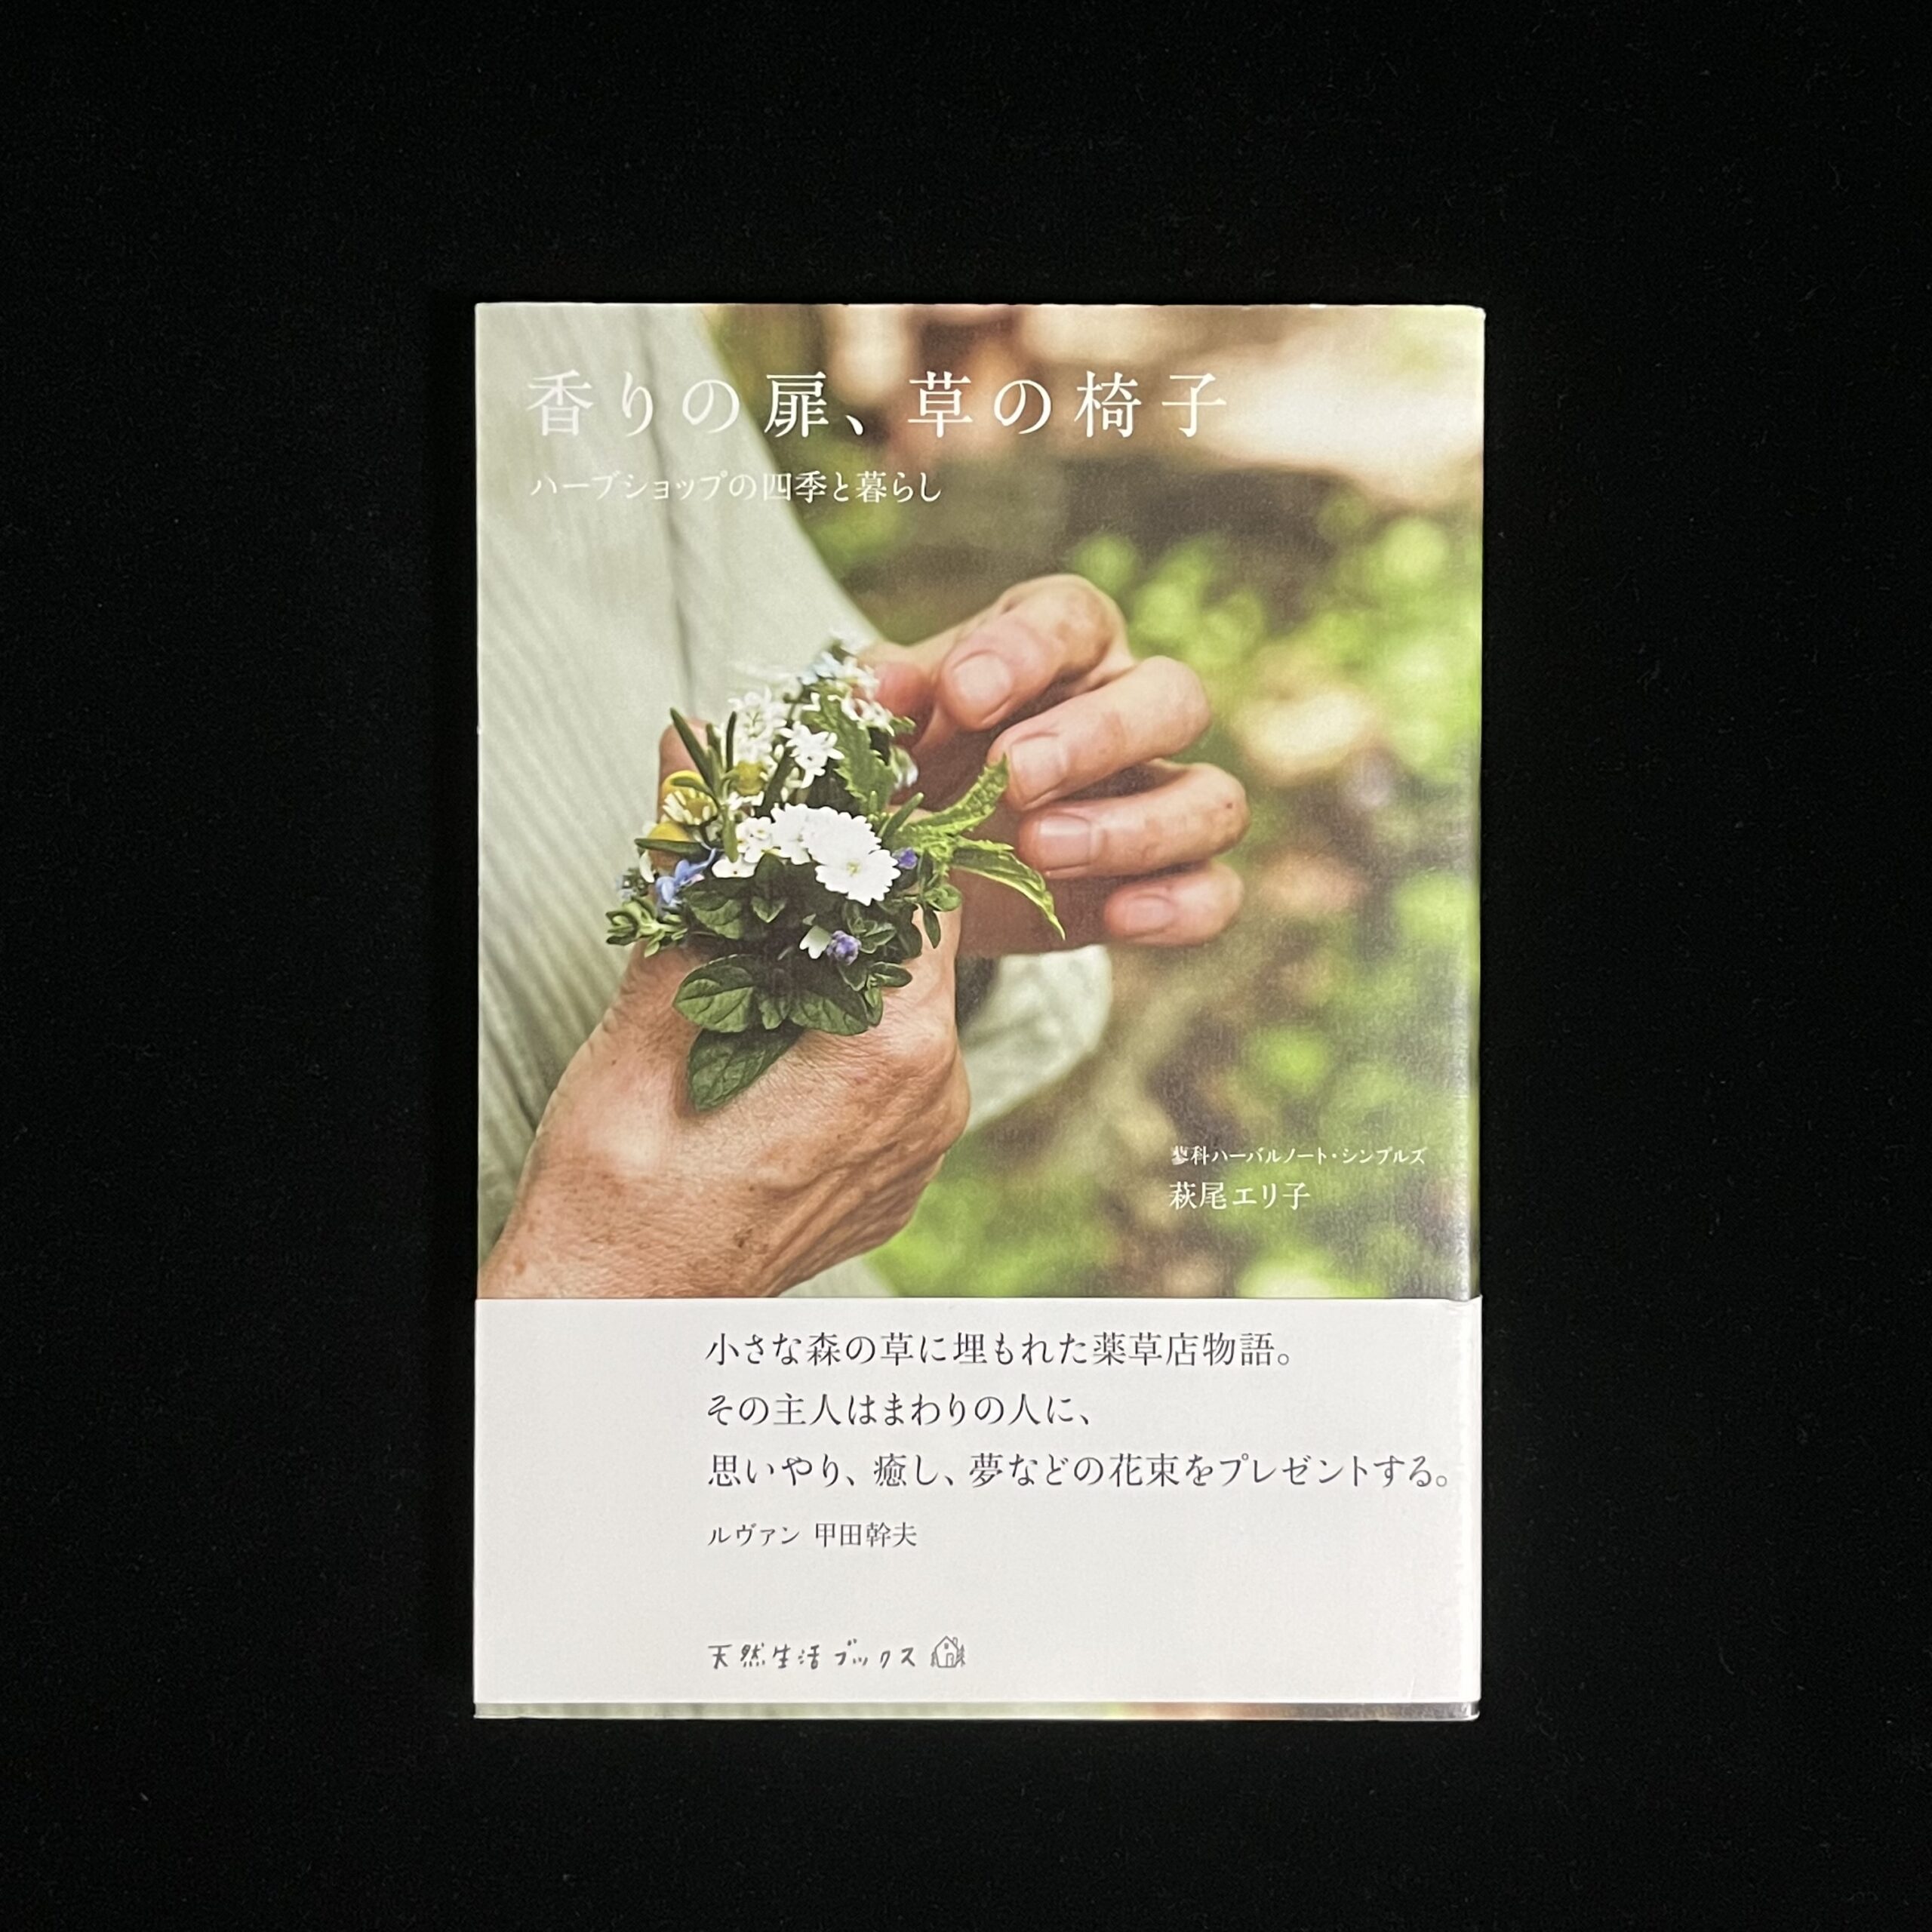 『香りの扉、草の椅子』の本の表紙の写真。白や紫のお花の手にはいるほどの小さな花束を作っている写真が載っています。